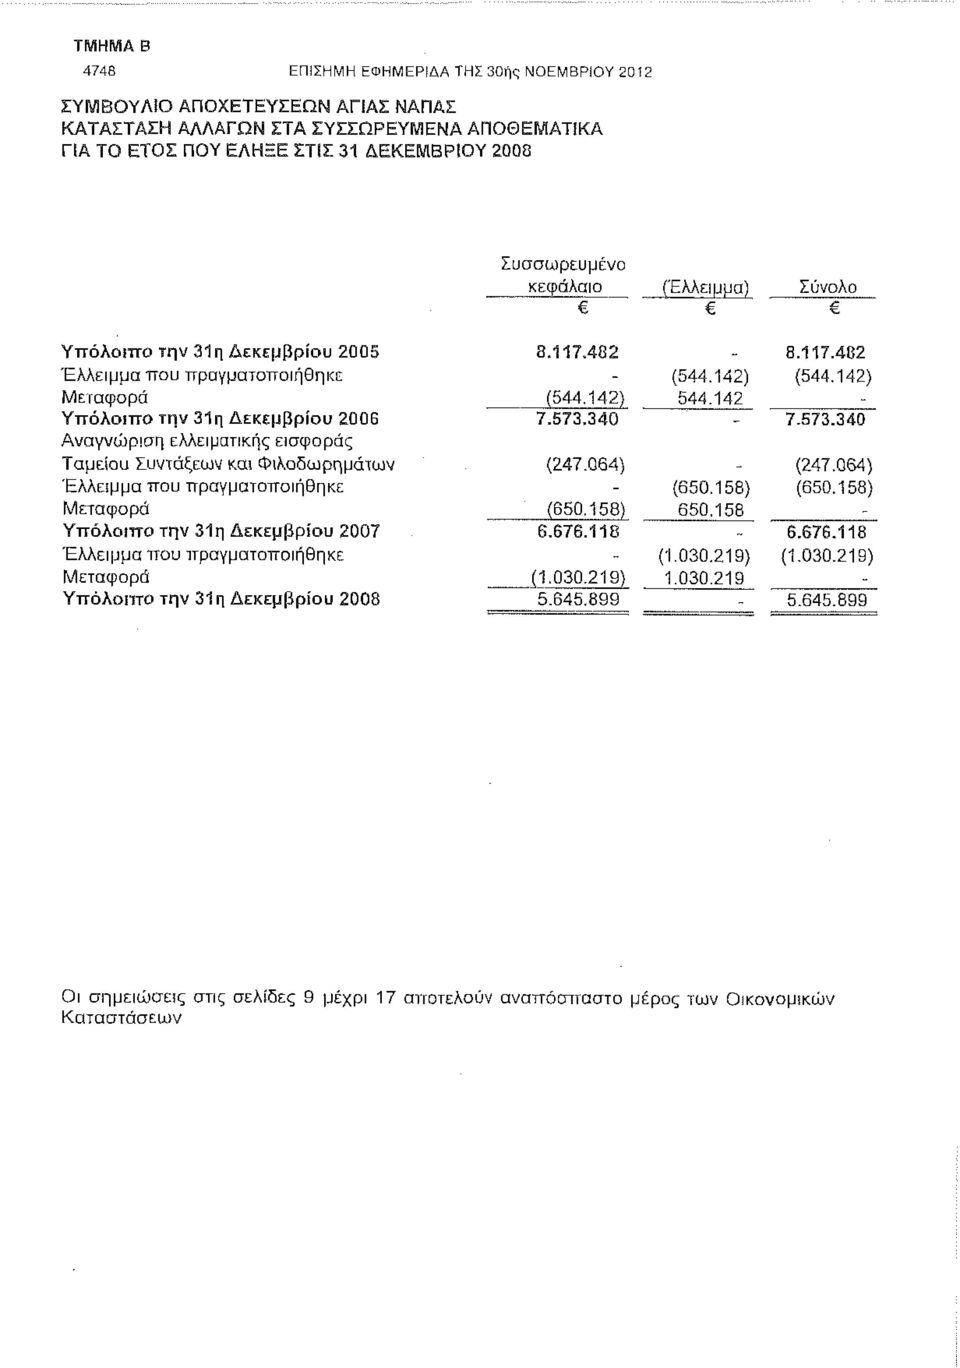 Έλλειμμα που πραγματοποιήθηκε Μεταφορά Υττόλοιττο την 31η Δεκεμβρίου 2007 Έλλειμμα που πραγματοποιήθηκε Μεταφορά Υττόλοπτο την 31η Δεκεμβρίου 2008 8.117.482 ~ 8.117.482 (544.142) (544.142) (544.142) 7.